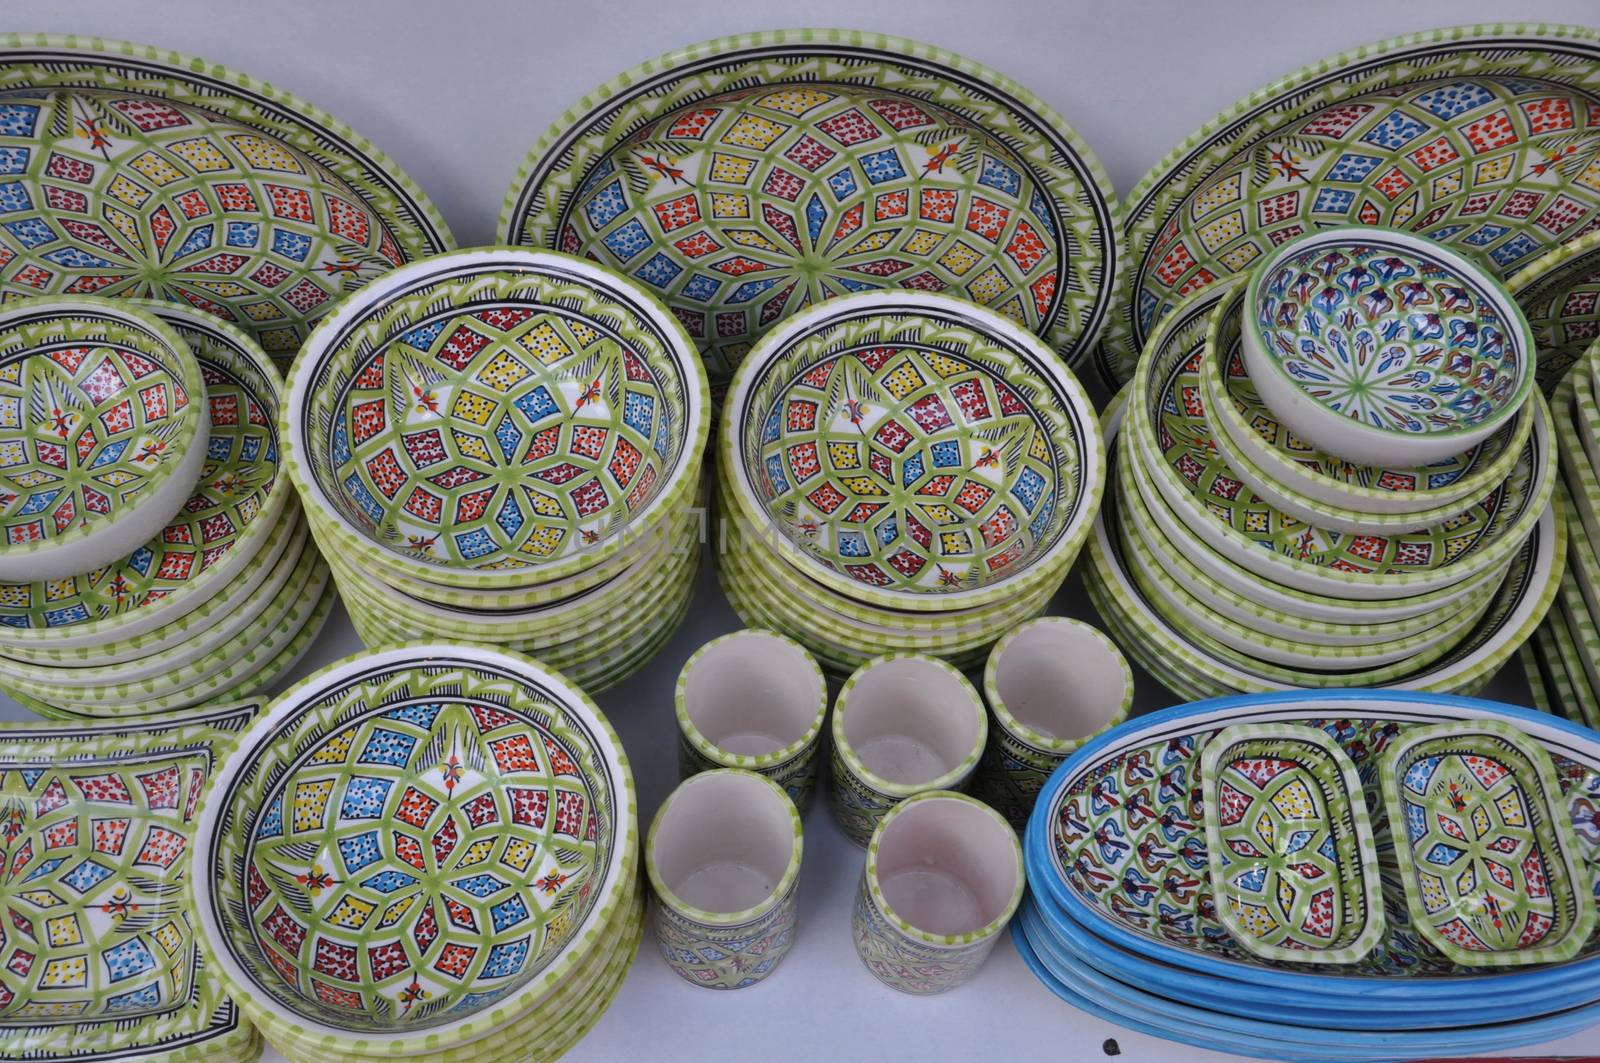 Tunisian Pottery